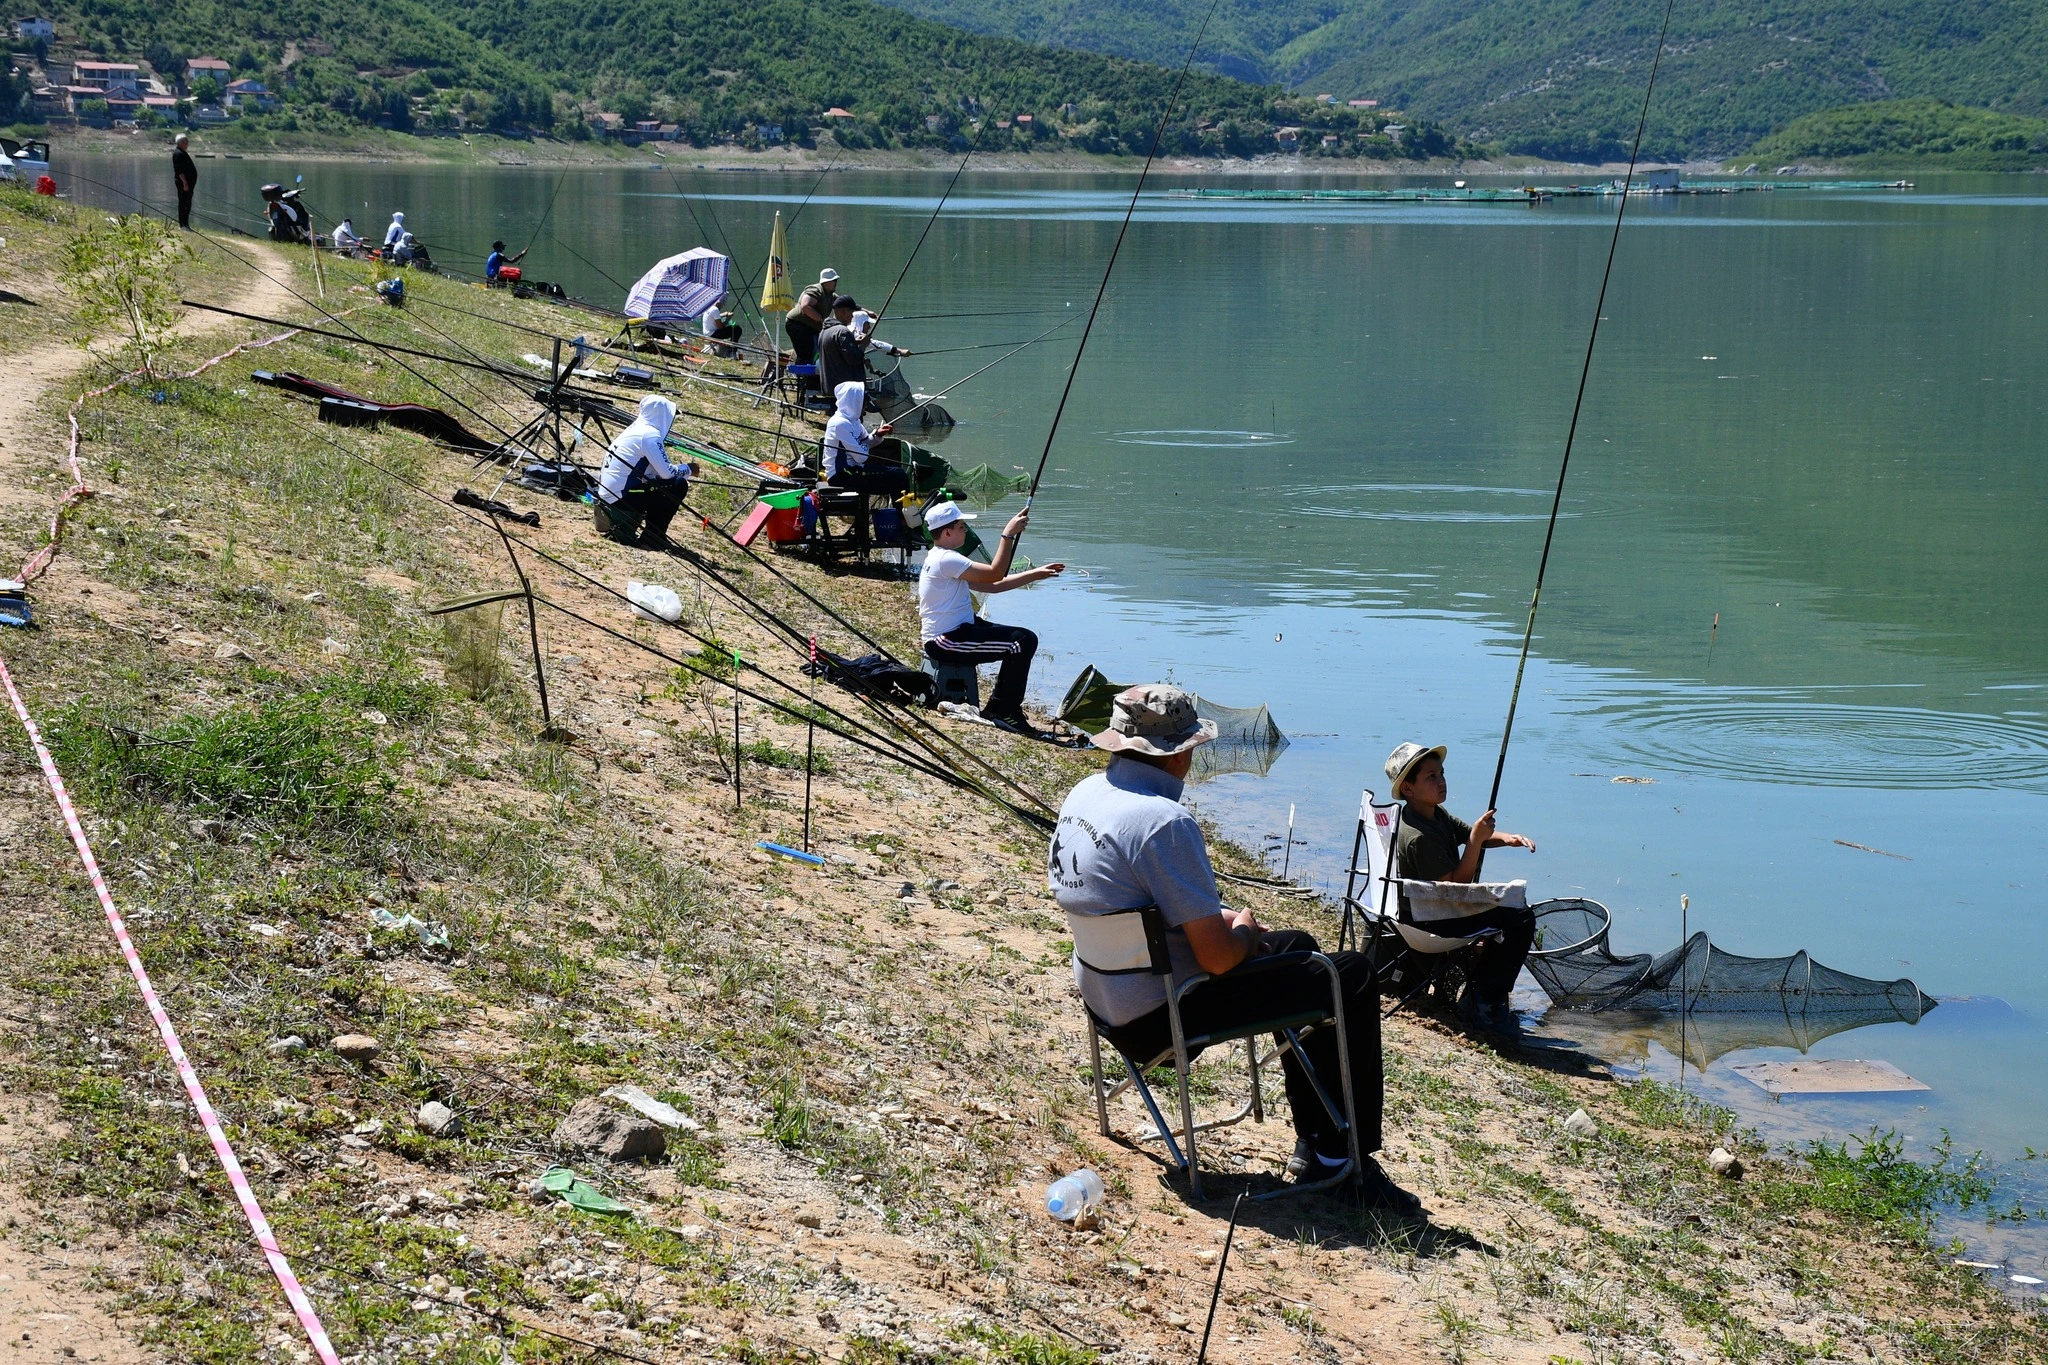 ЗРР СК „Св. Апостол Петар“ наскороќе организира Куп во спортски риболов во дисциплината пливка